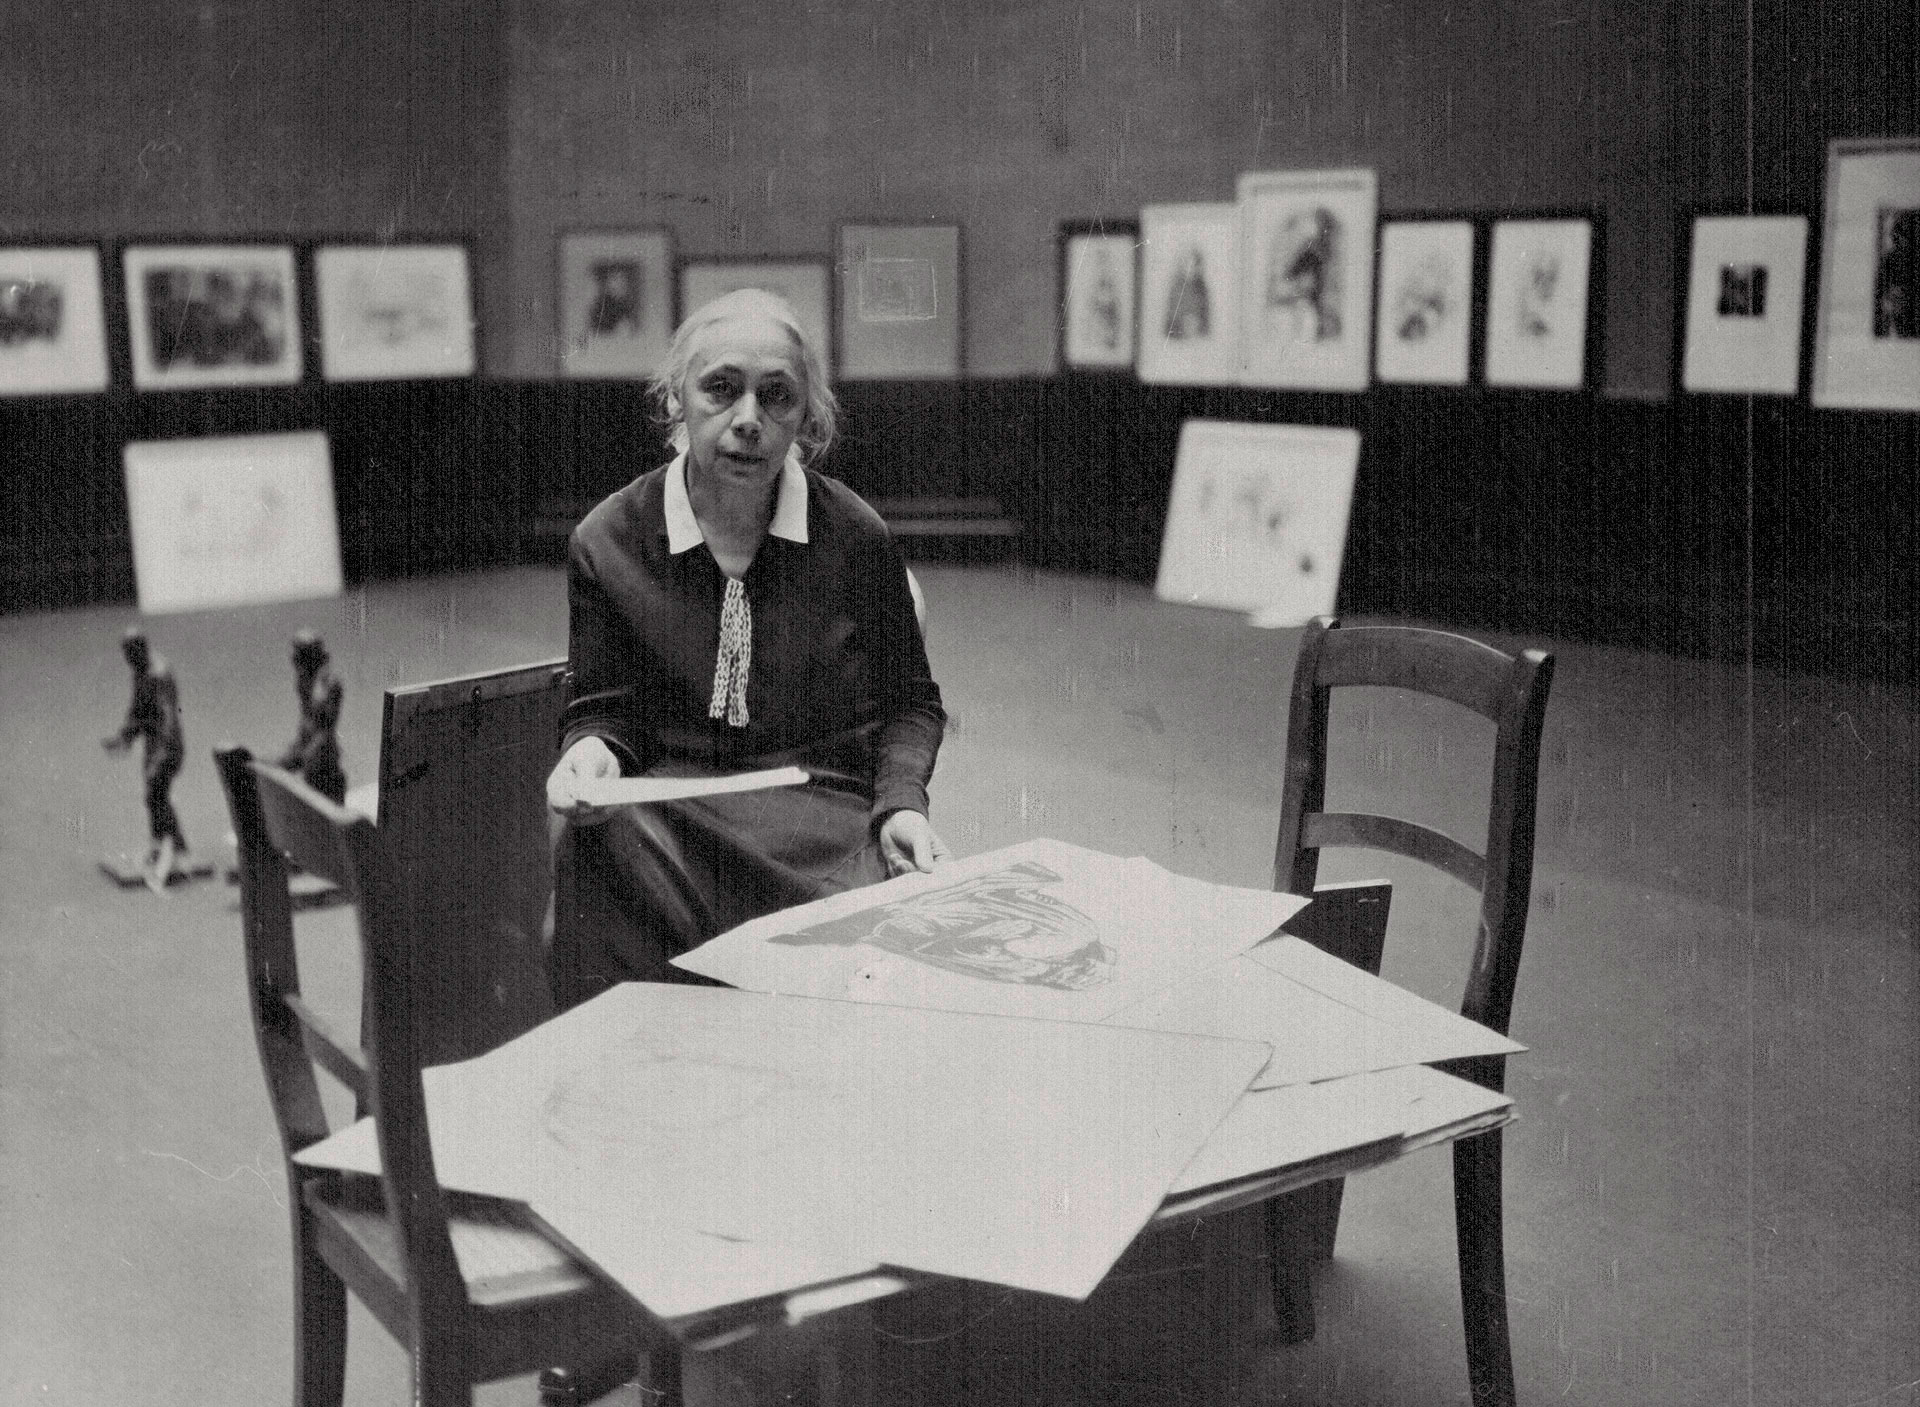  Käthe Kollwitz, 1927, choisissant les œuvres qu’elle exposera à l’Académie des arts de Prusse, photographe inconnu, succession Kollwitz © Käthe Kollwitz Museum Köln